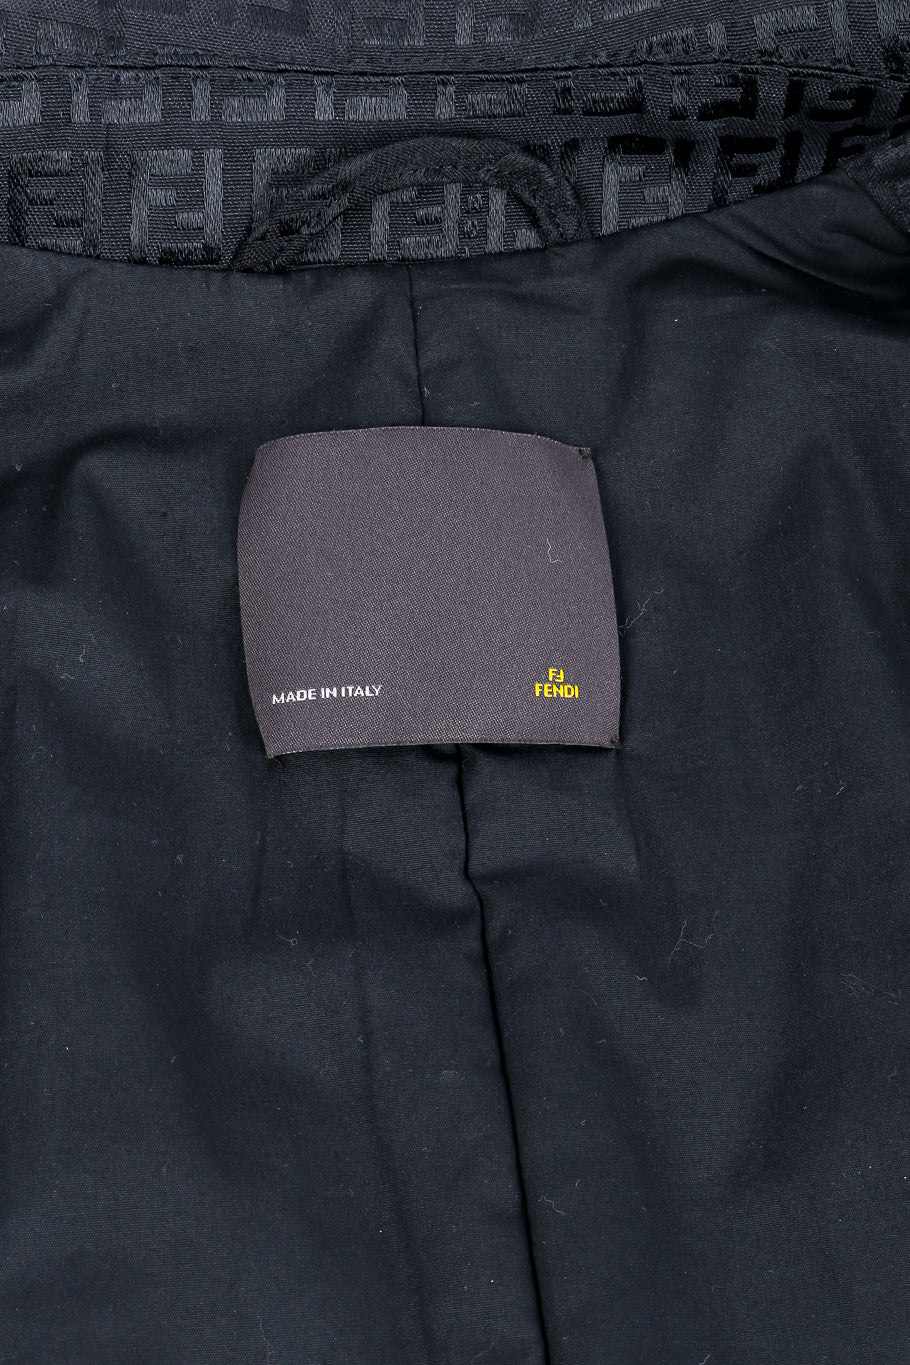 Fendi zucca monogram trench coat designer label @recessla